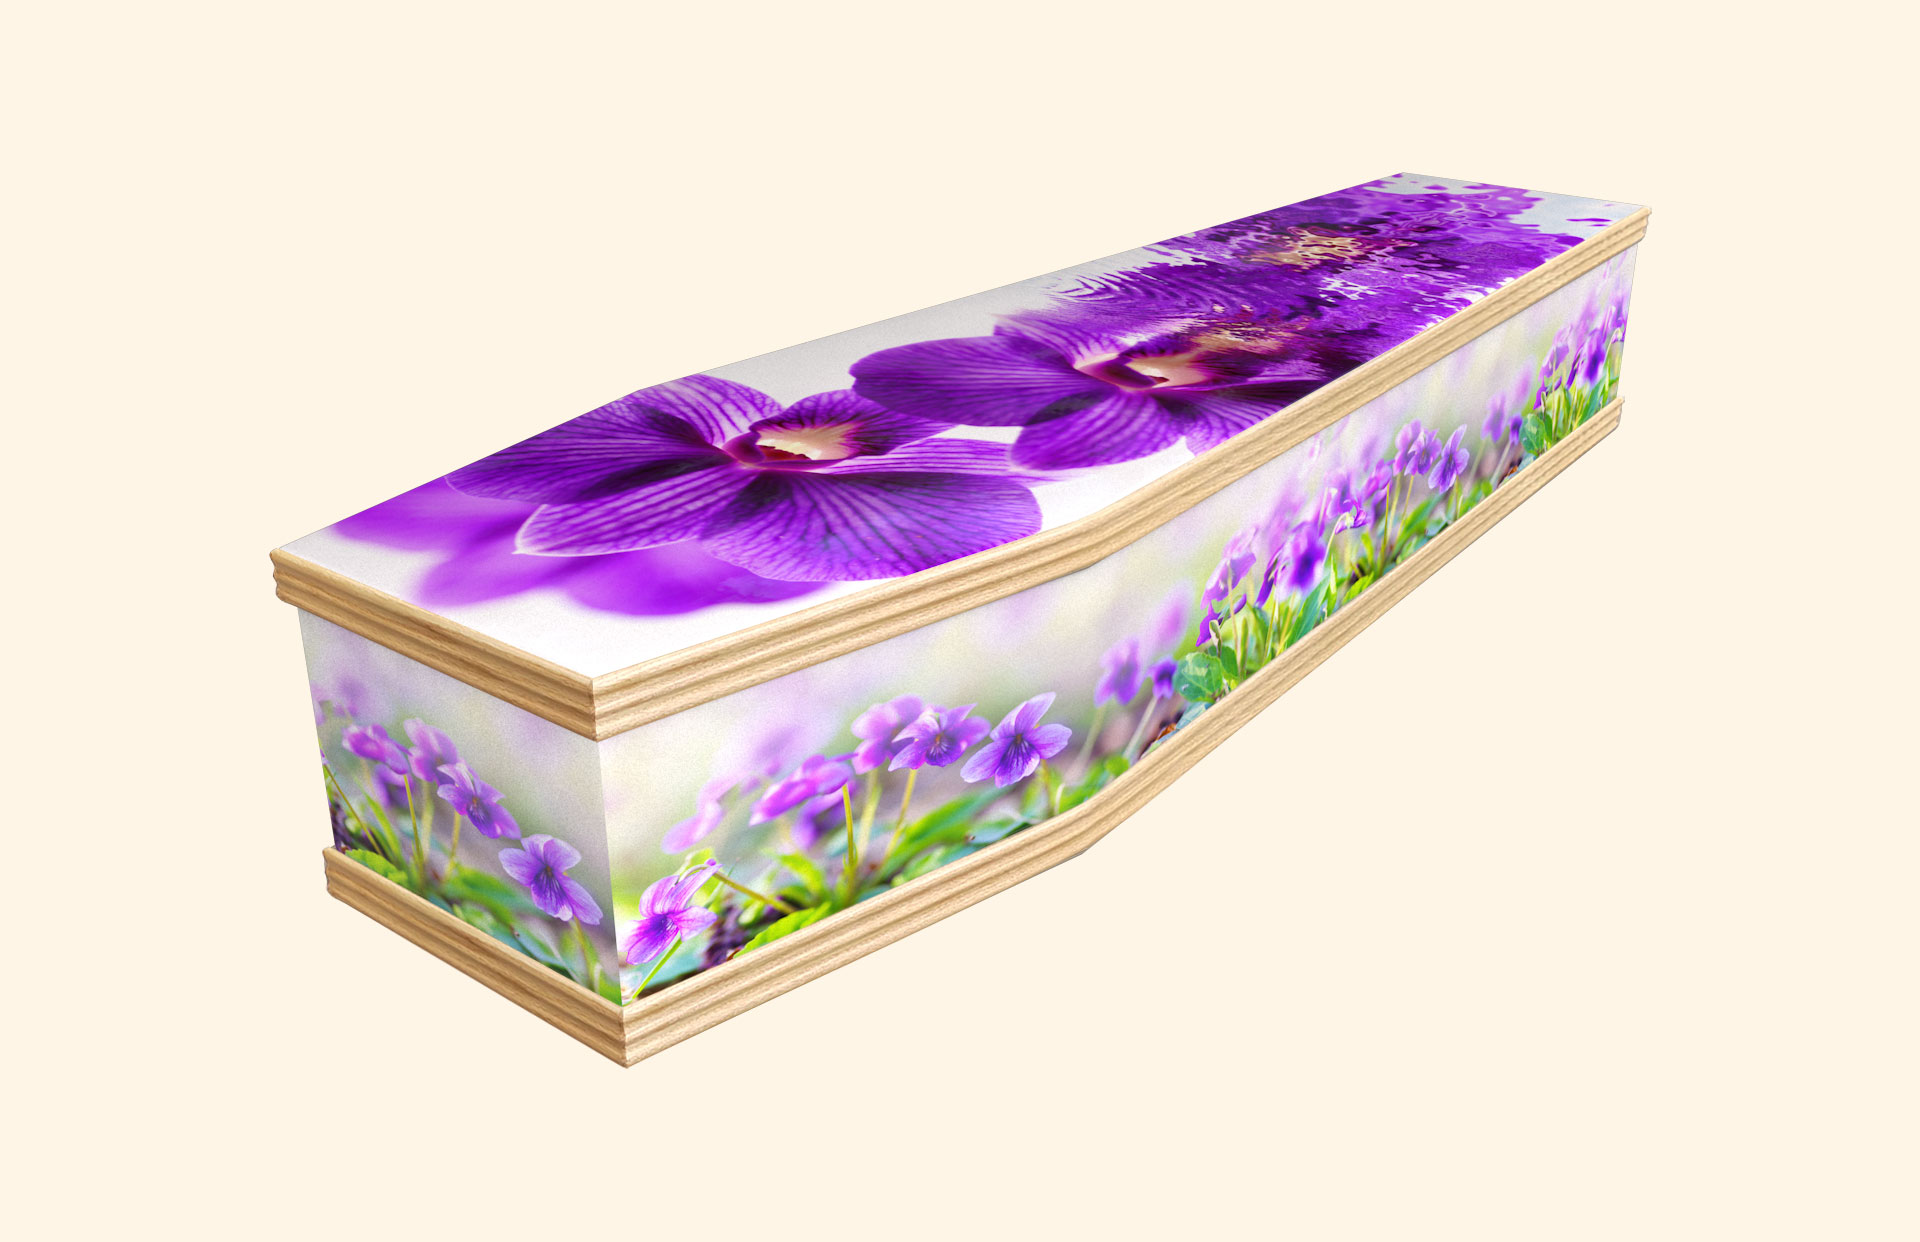 Dream in Purple design on a classic coffin